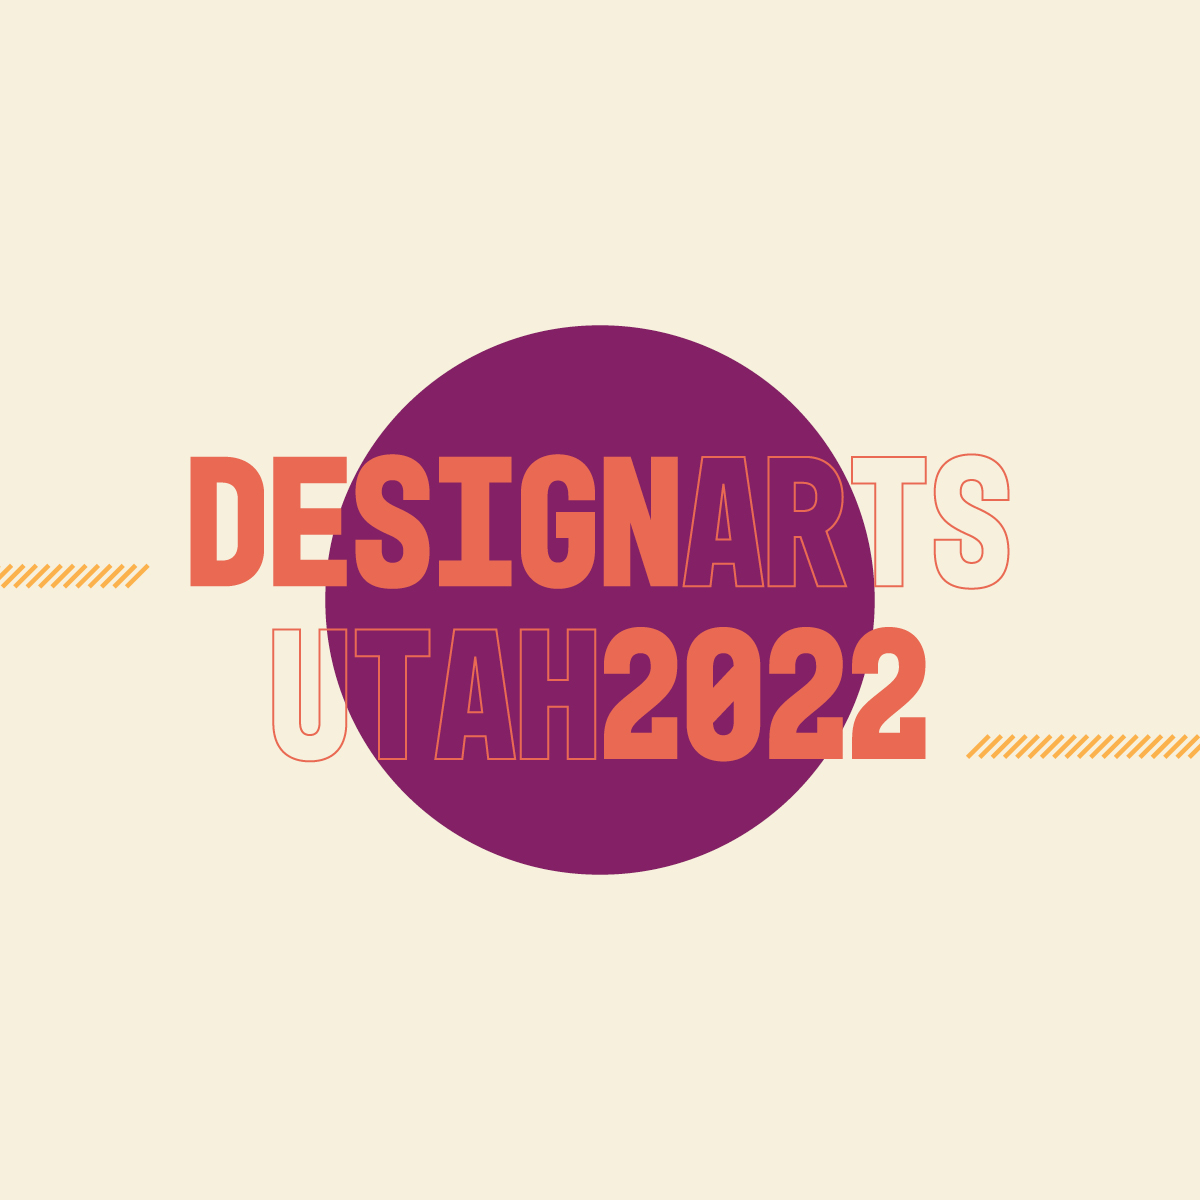 Design Arts Utah 2022.